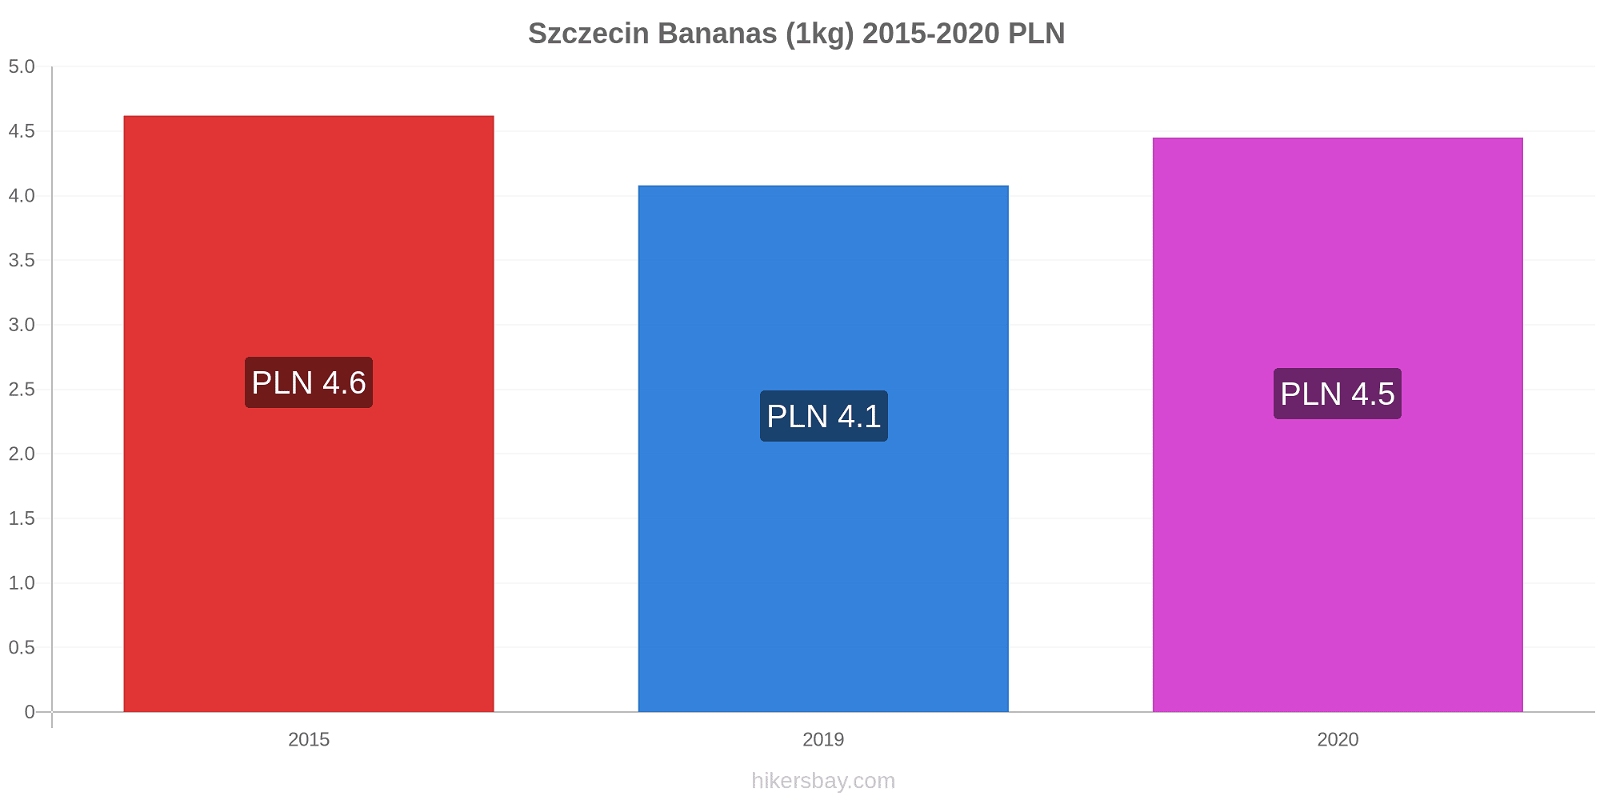 Szczecin price changes Bananas (1kg) hikersbay.com